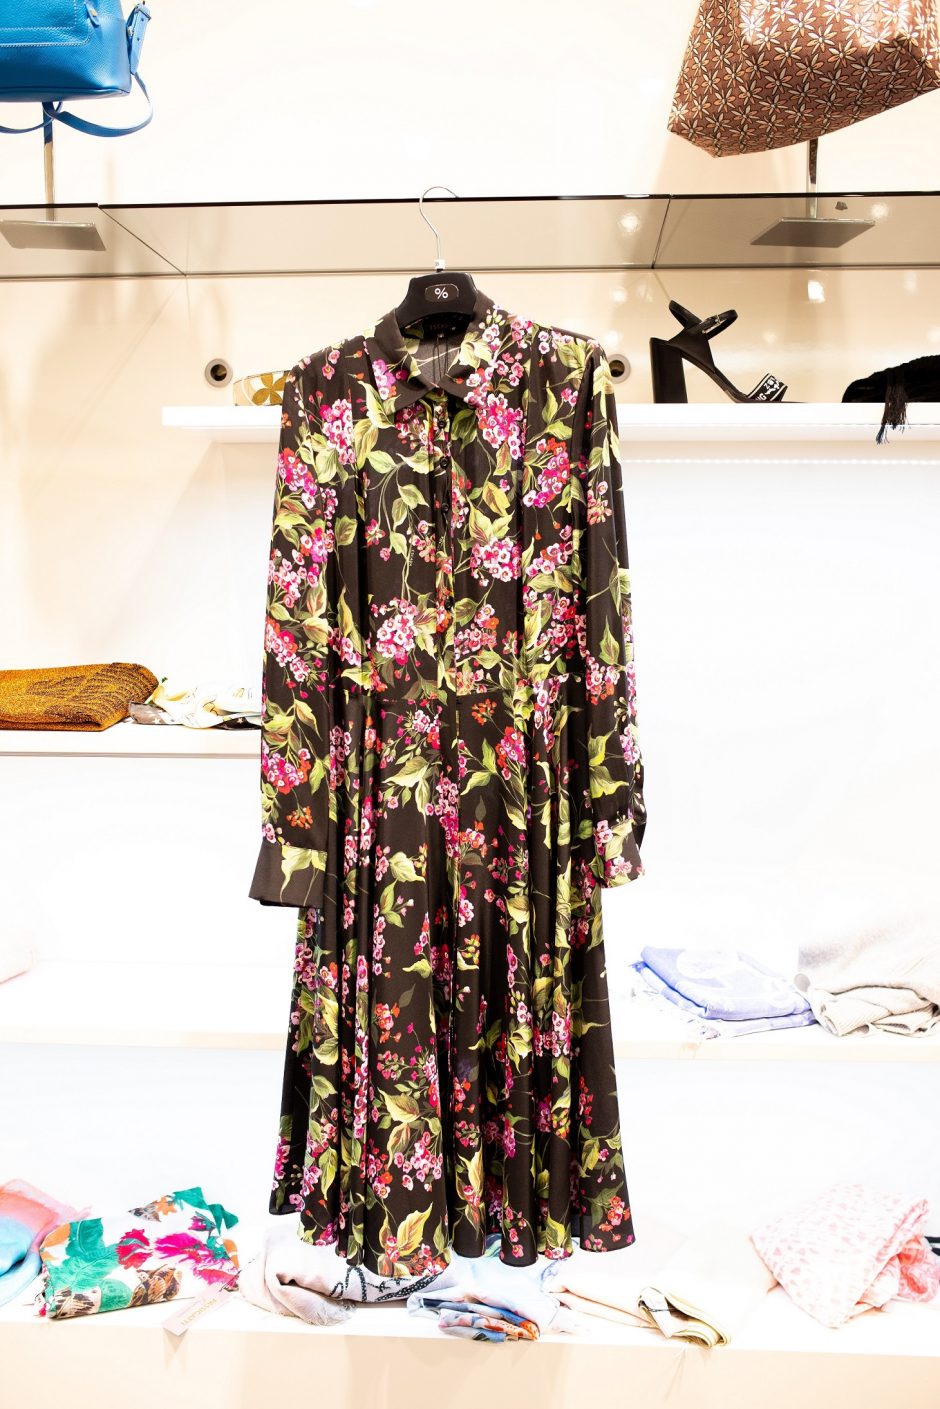 Stilistė V. Šaulytė pataria: 5 garderobo detalės, kurioms neverta taupyti